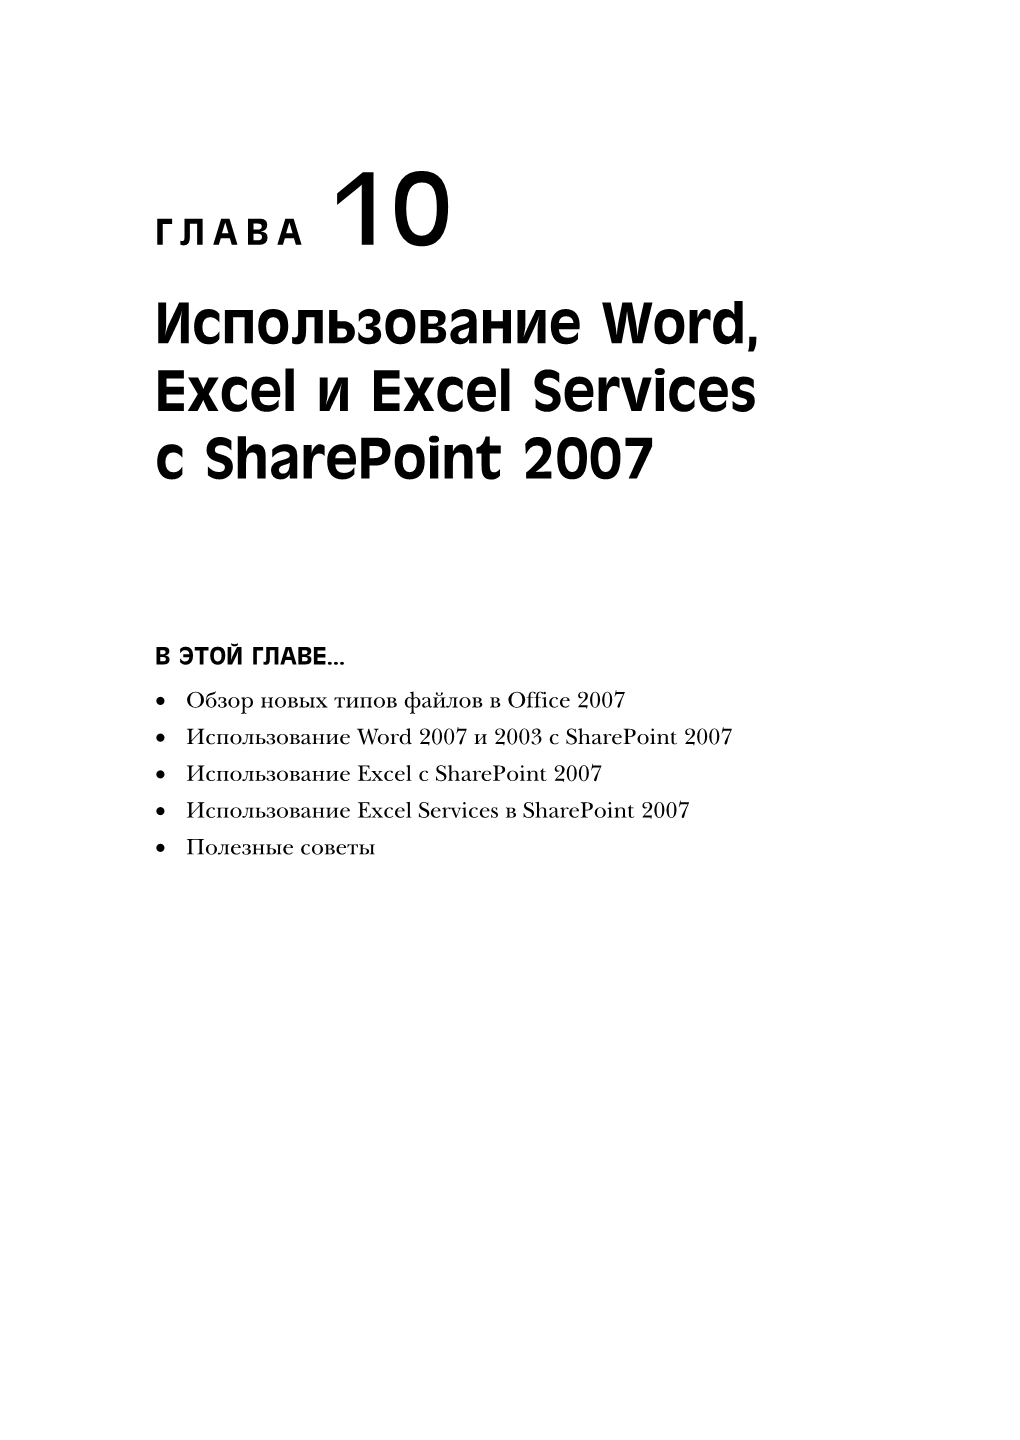 Использование Word, Excel И Excel Services С Sharepoint 2007